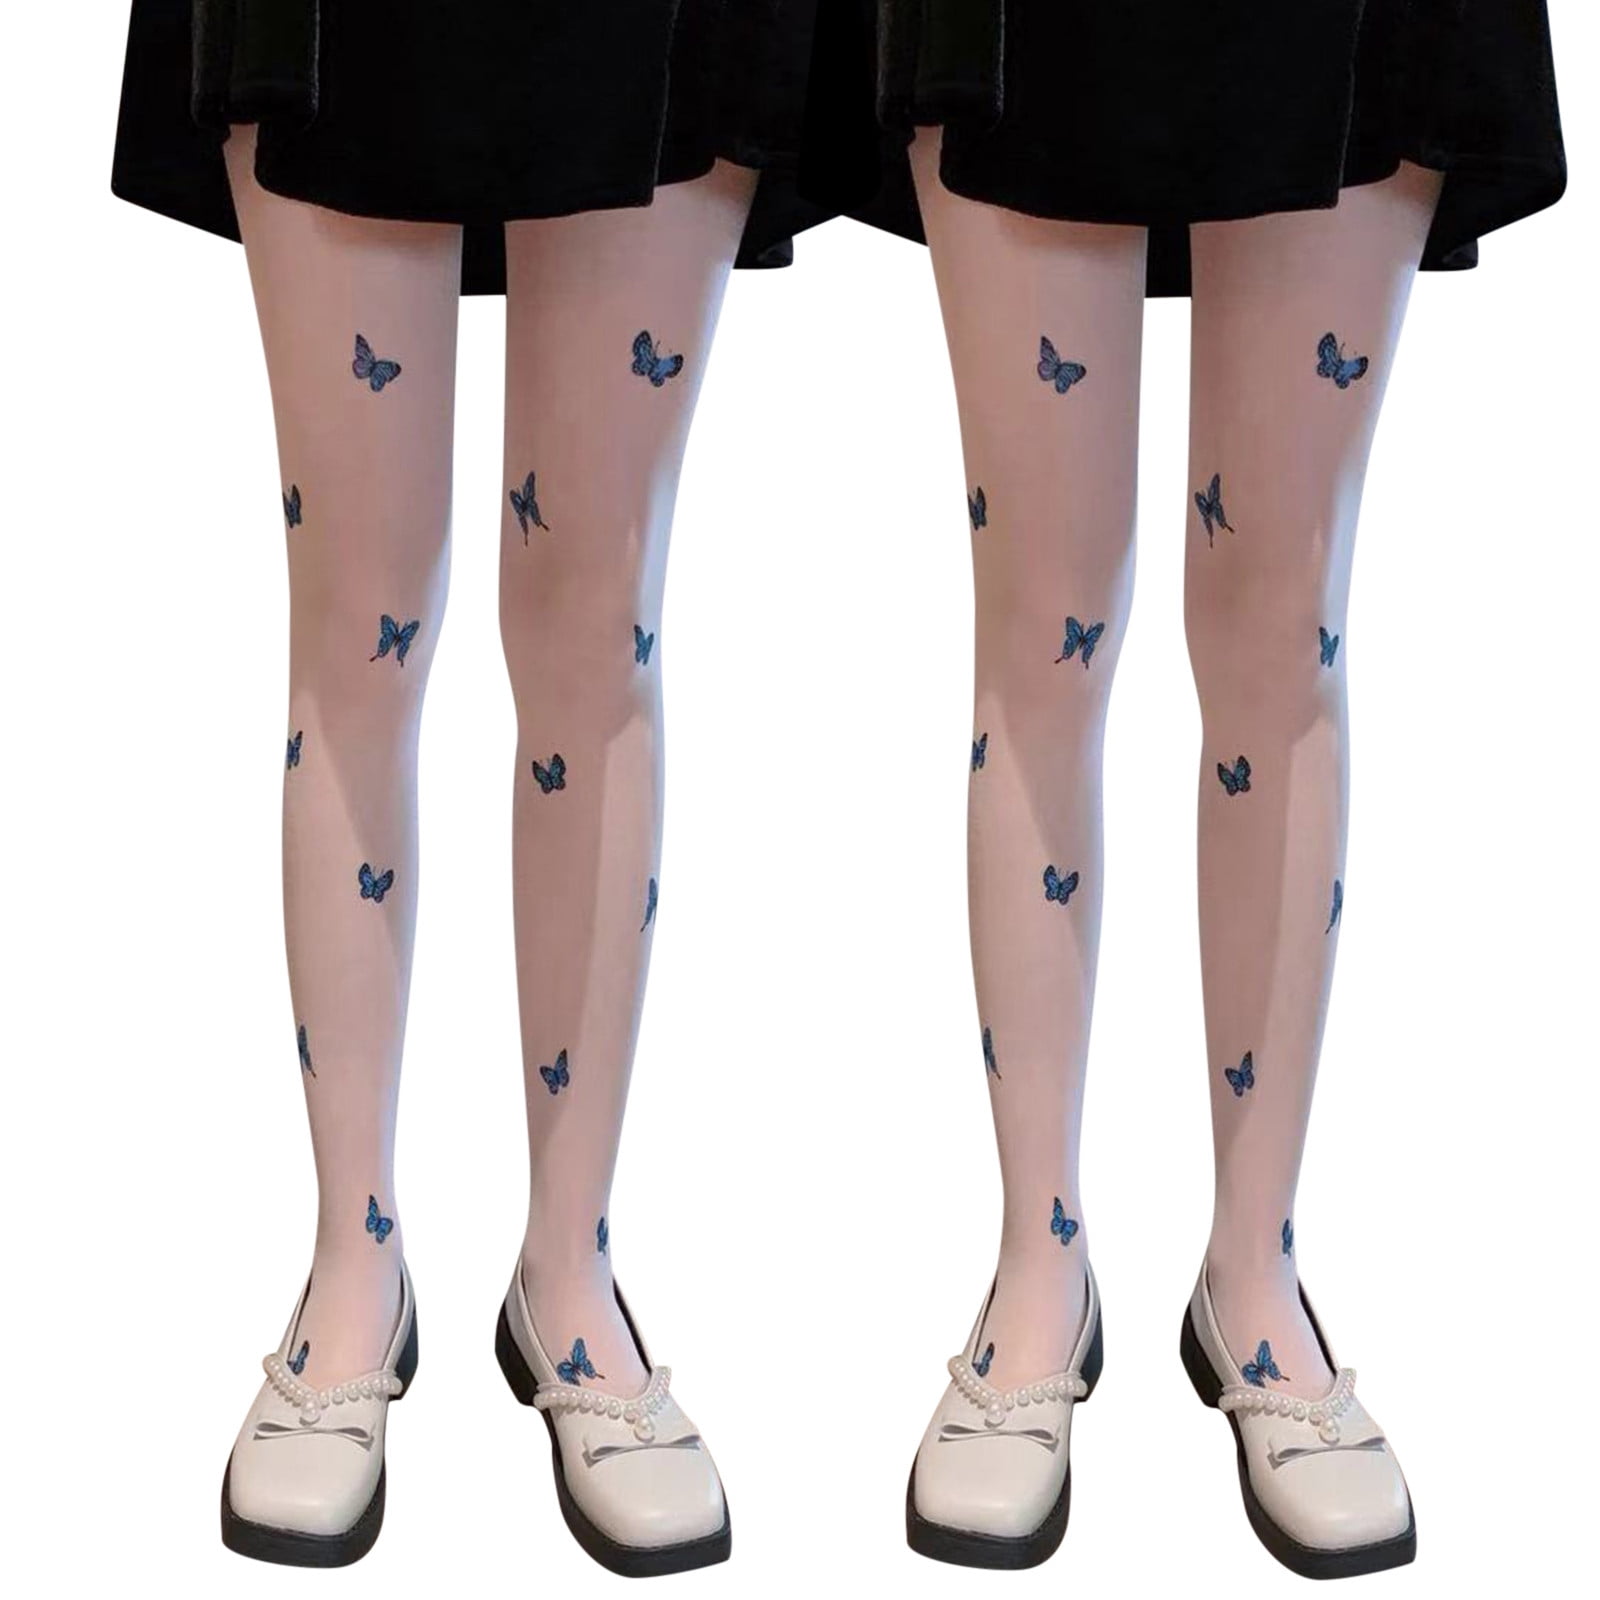 JDEFEG Convertible Tights Ultra-Thin Pantyhose Women Socks Tights ...